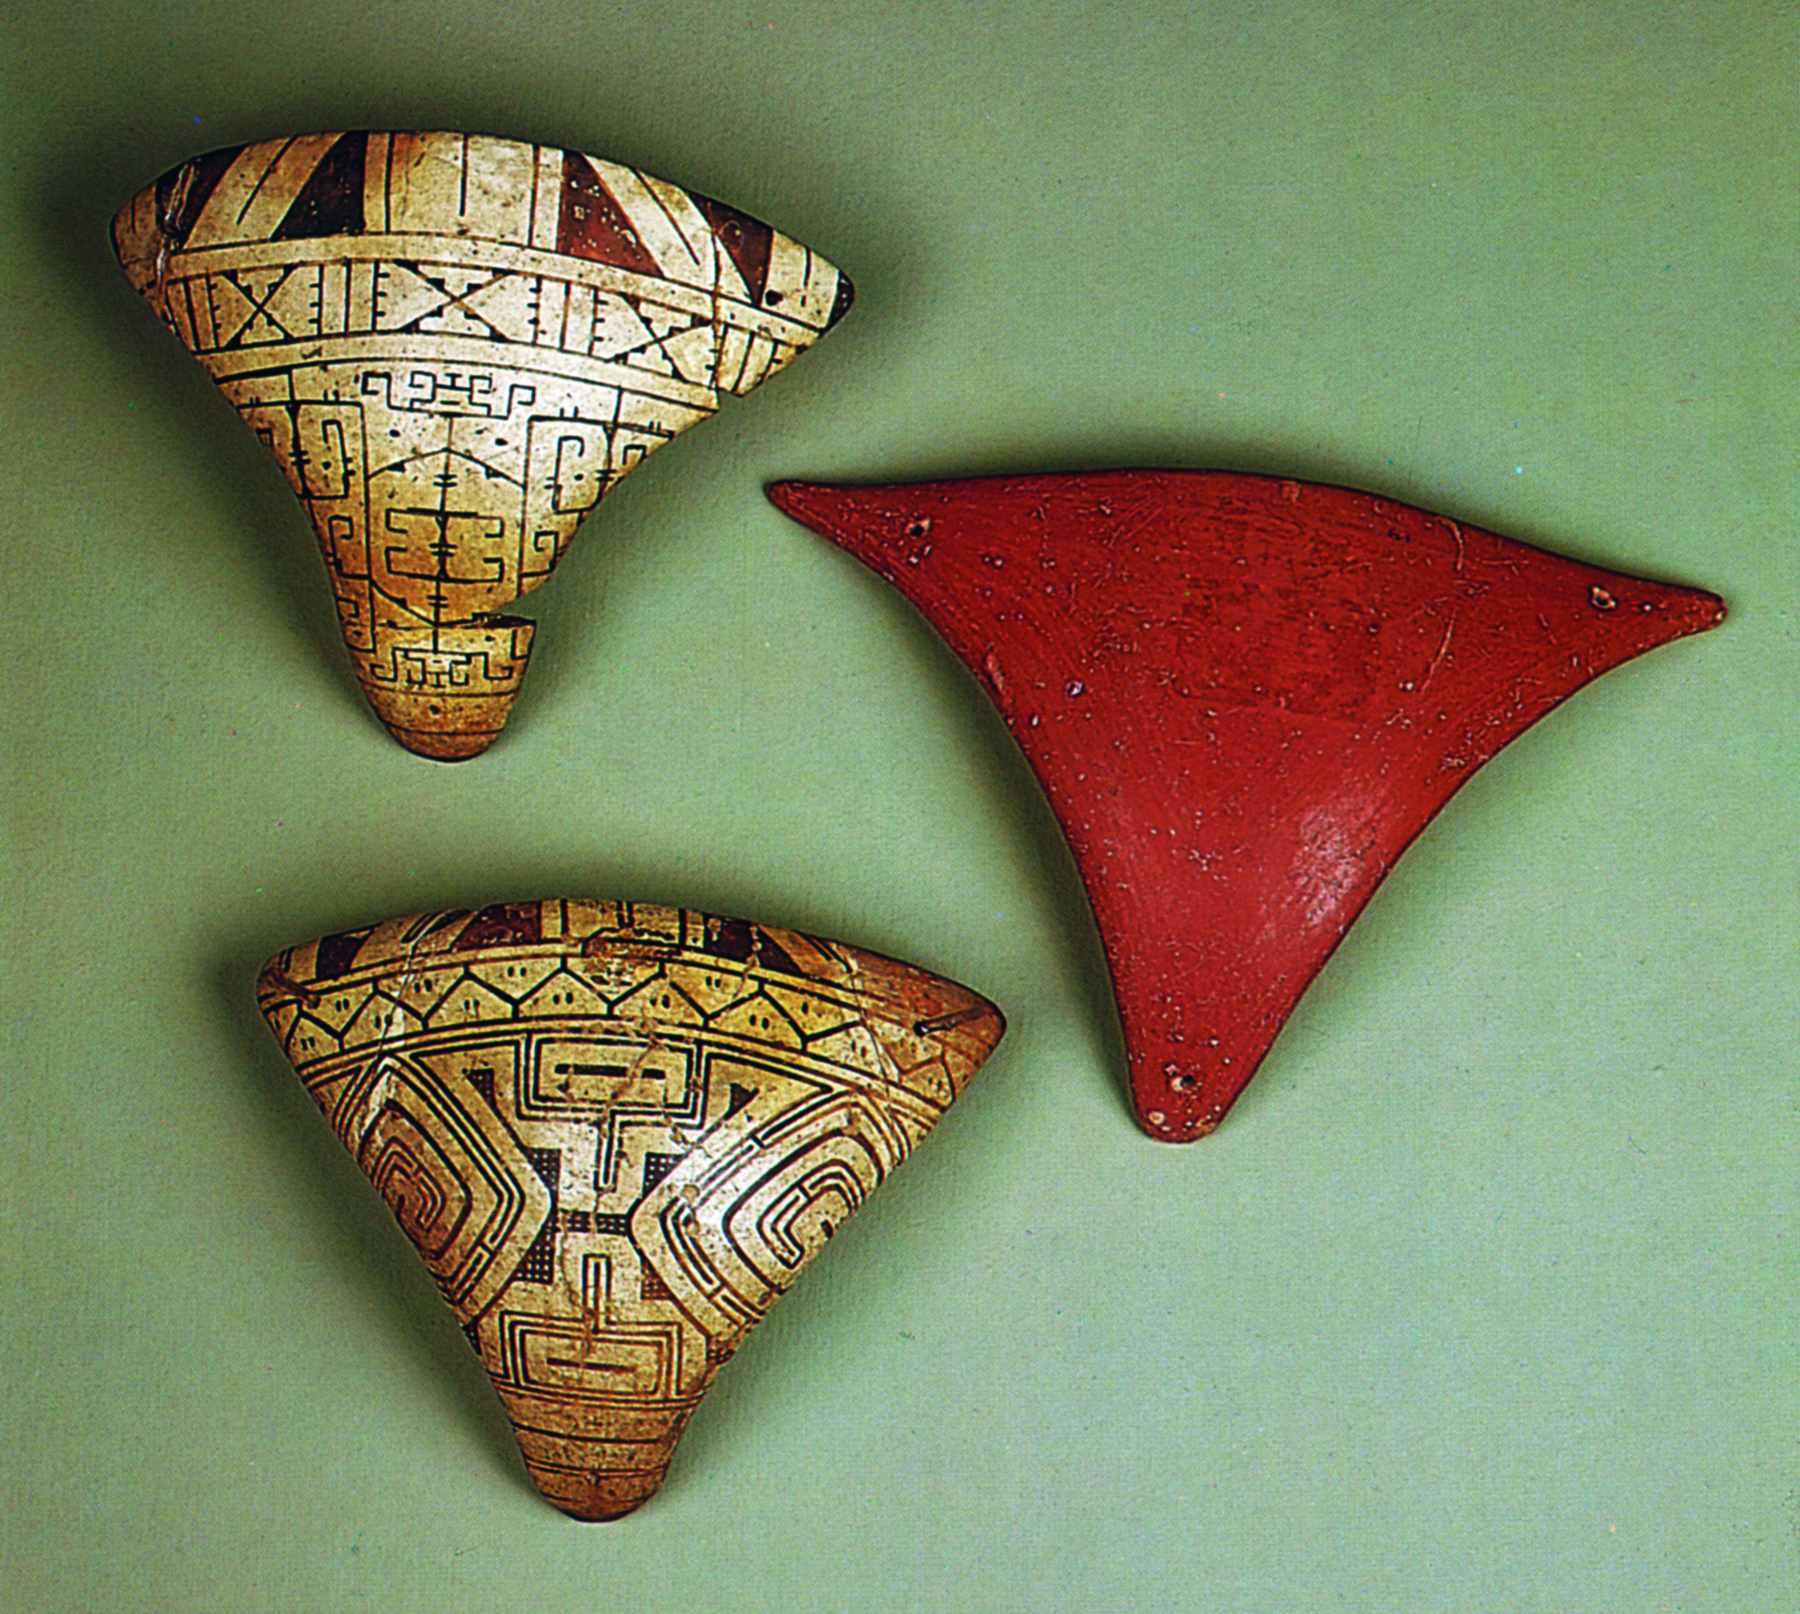 Cerâmica. Três objetos triangulares, levemente curvos. Dois deles possuem desenhos de linhas e formas geométrica. O outro é liso, com superfície avermelhada.